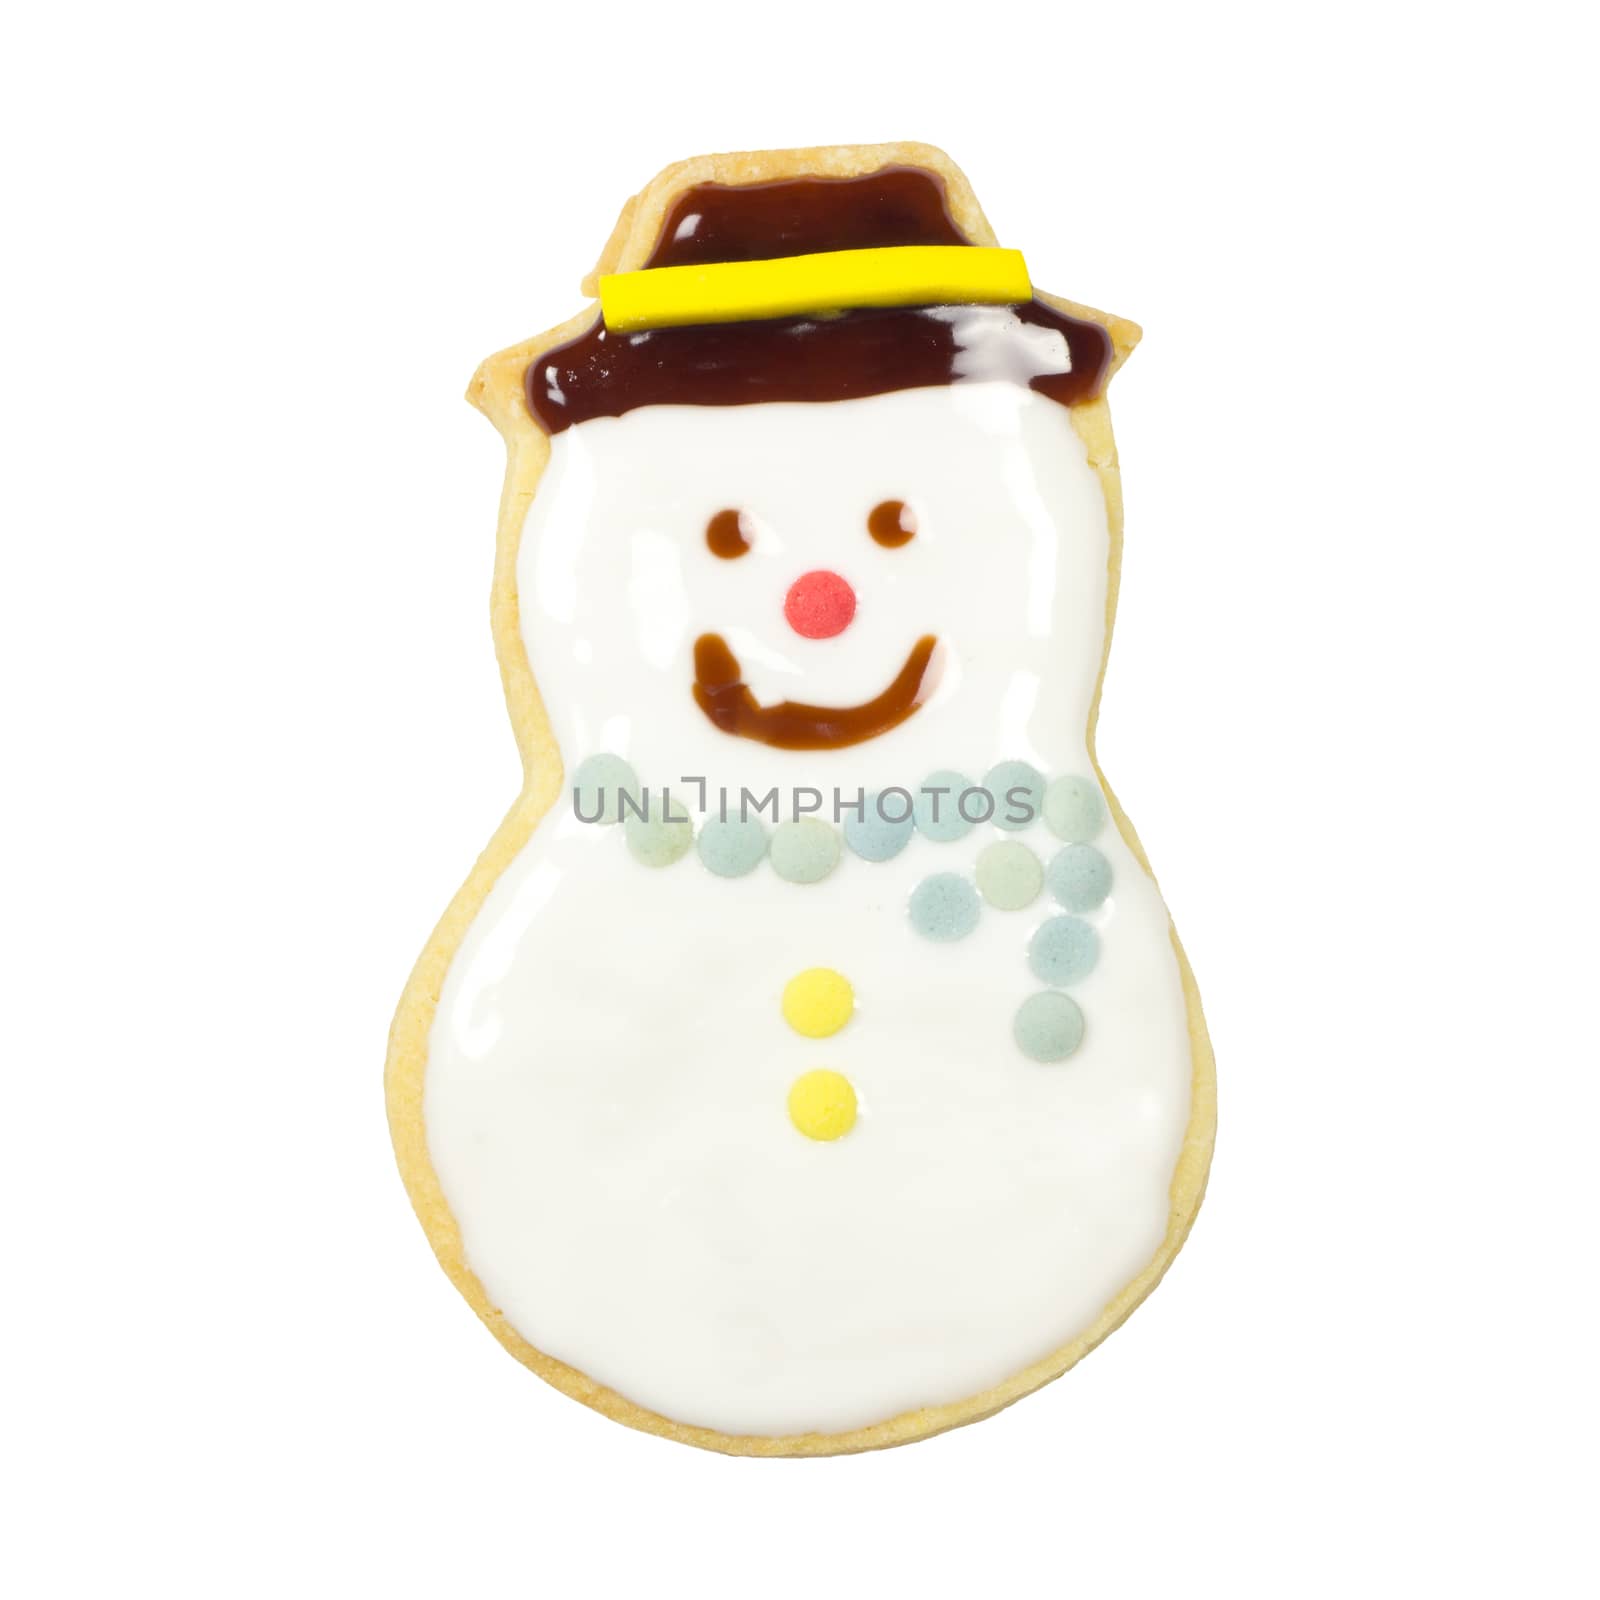 Gingerbread cookies by wyoosumran